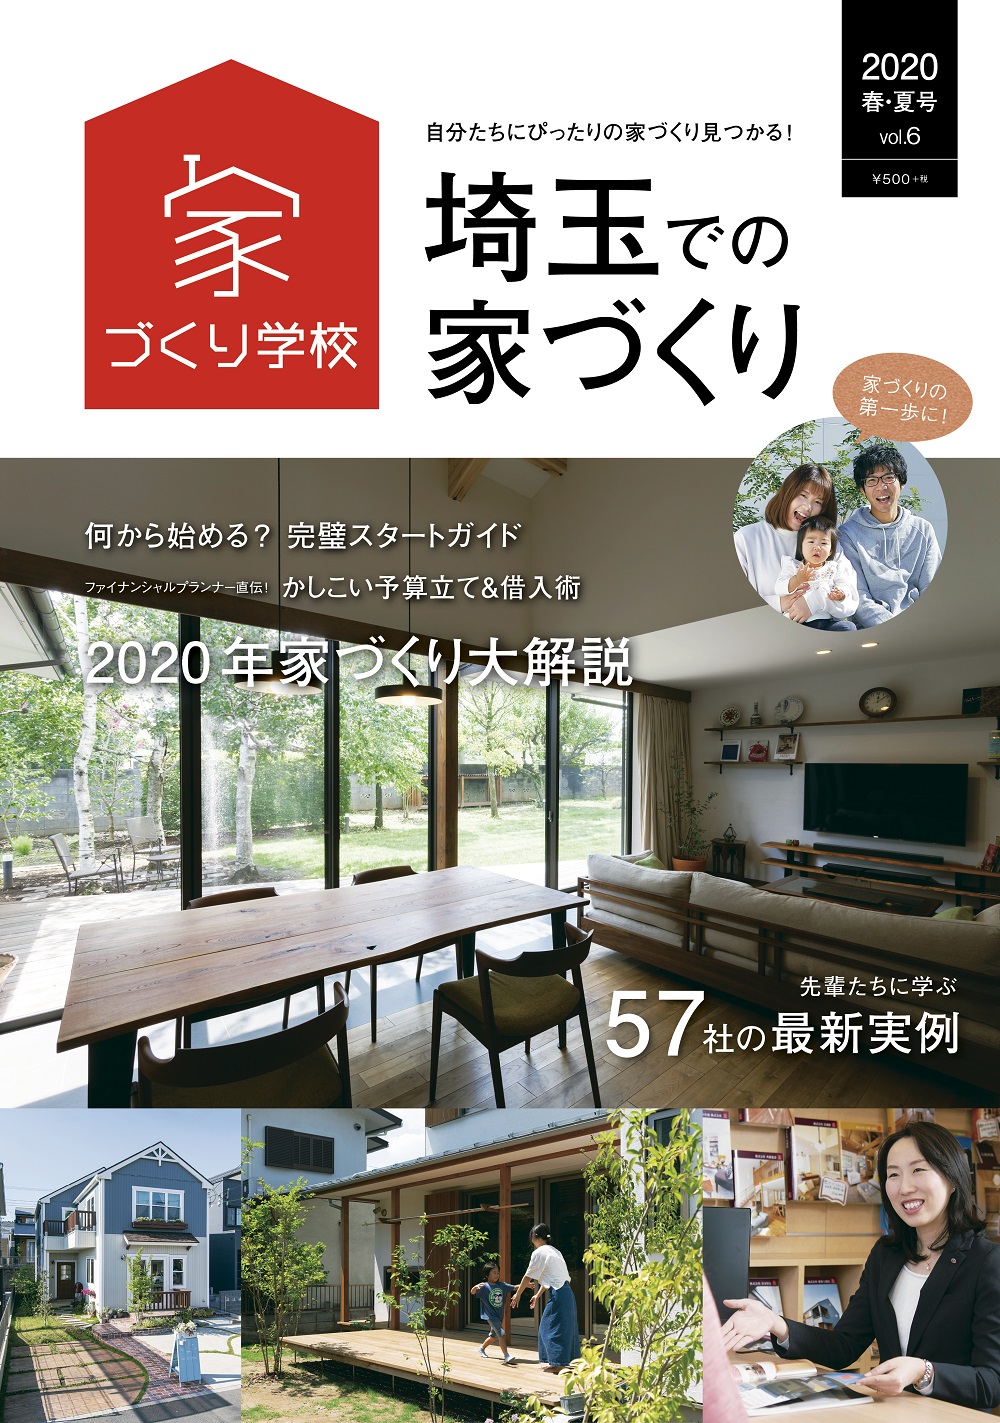 埼玉での家づくりVol.6に掲載されました。